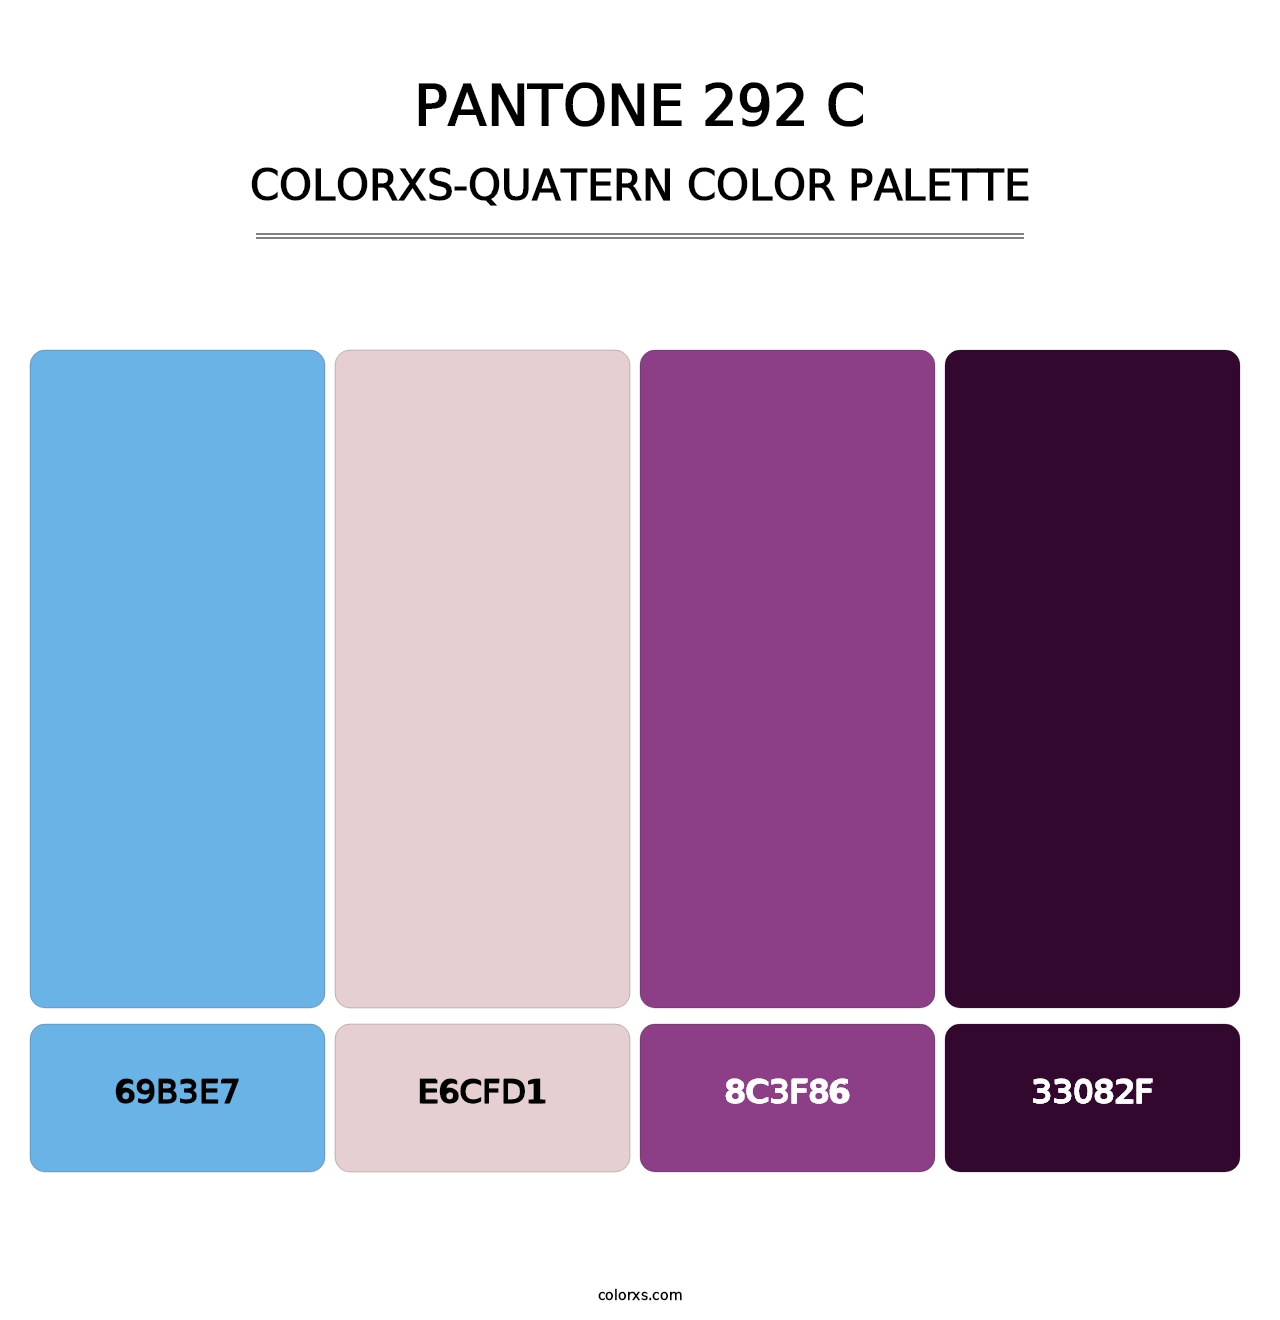 PANTONE 292 C - Colorxs Quatern Palette